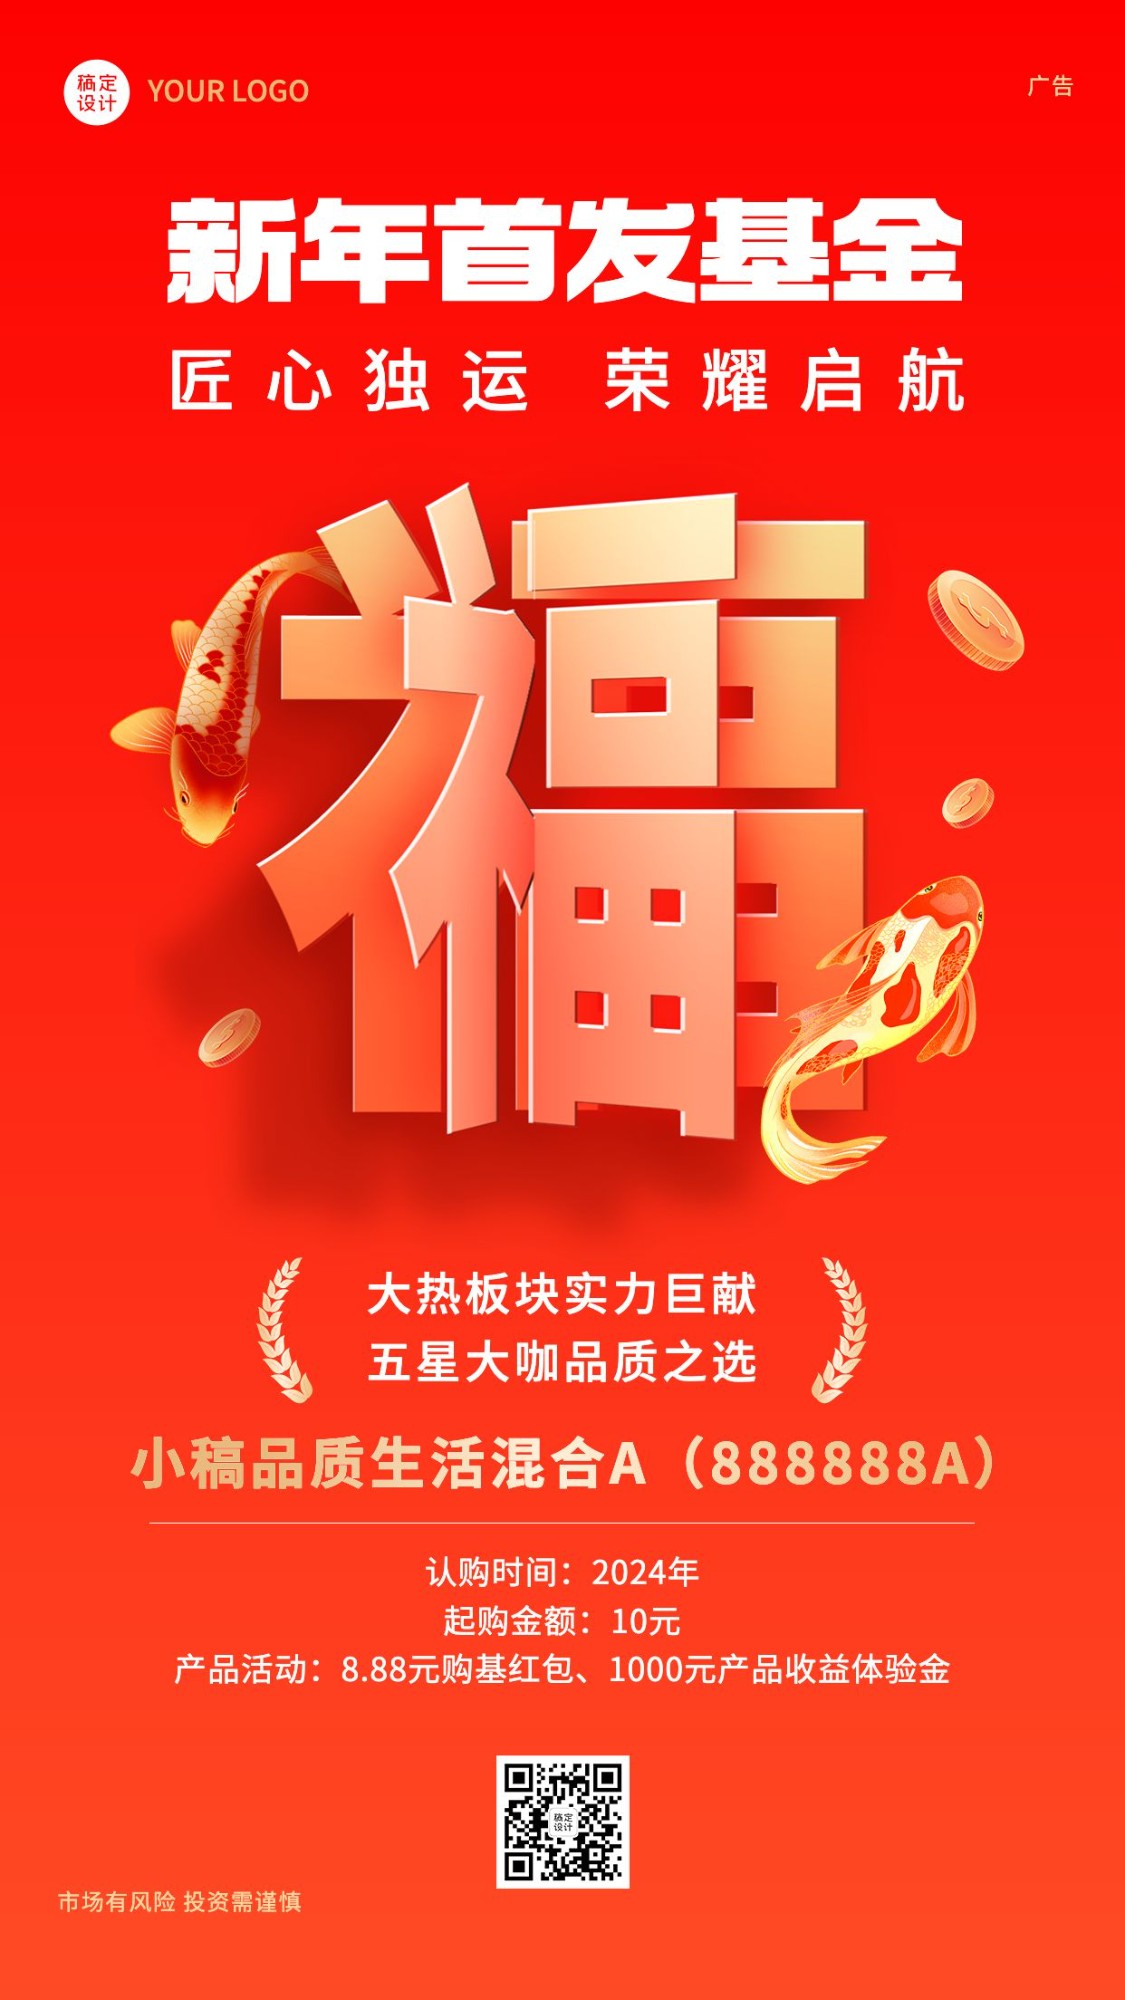 春节新年金融保险基金理财产品上市营销创意手机海报预览效果